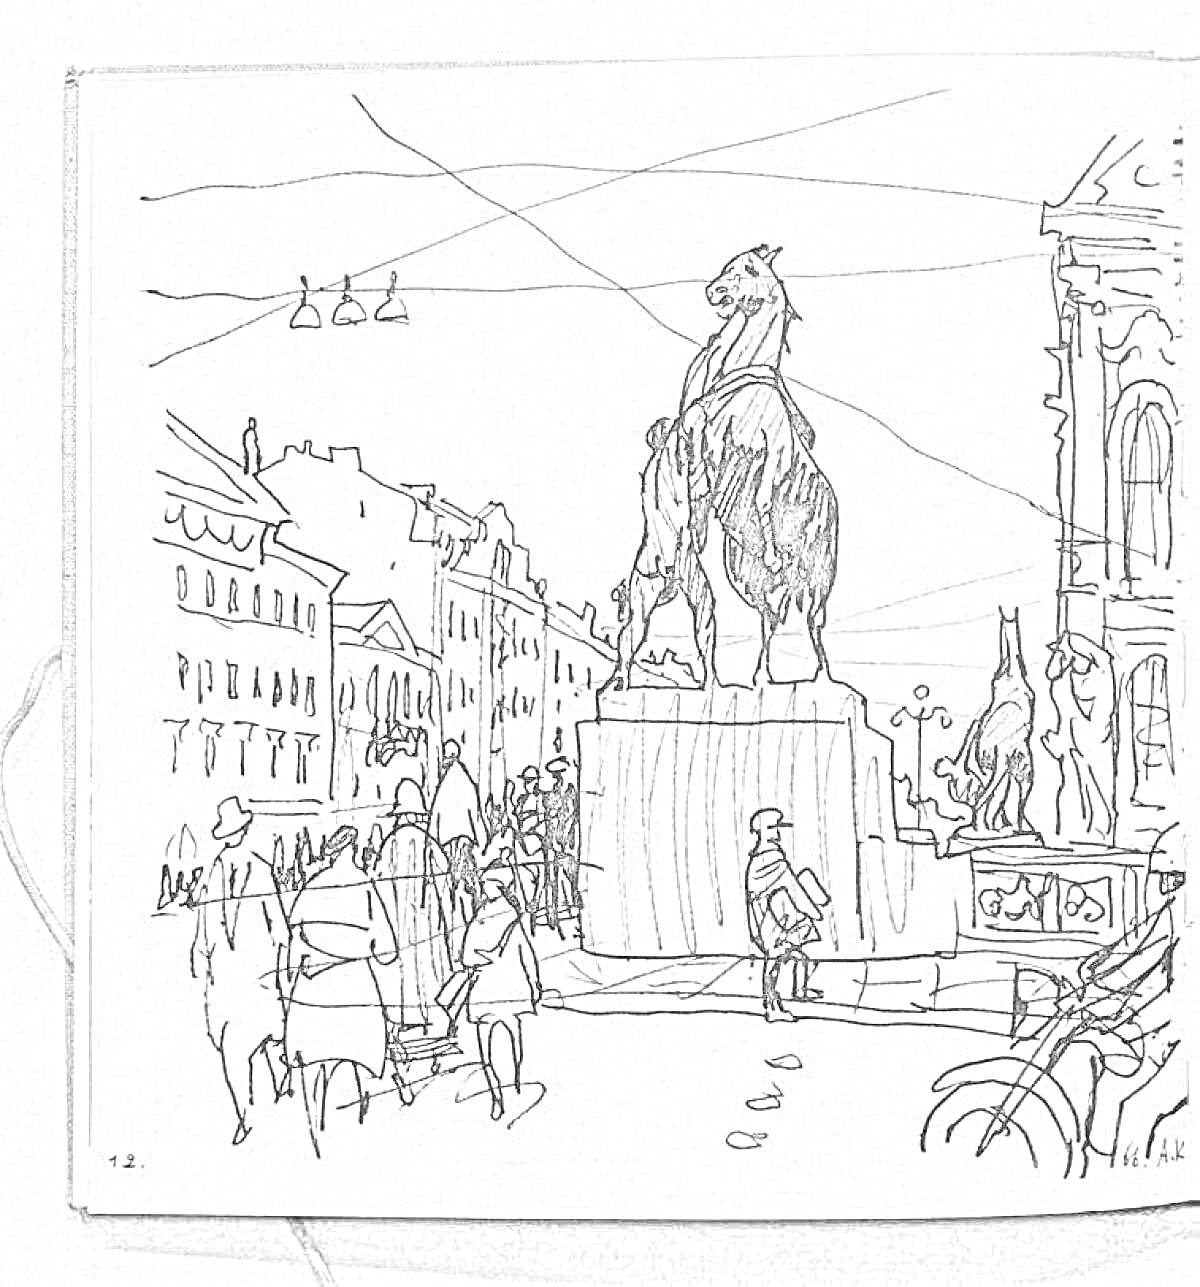 Конная статуя на городской площади, окруженная пешеходами и зданиями